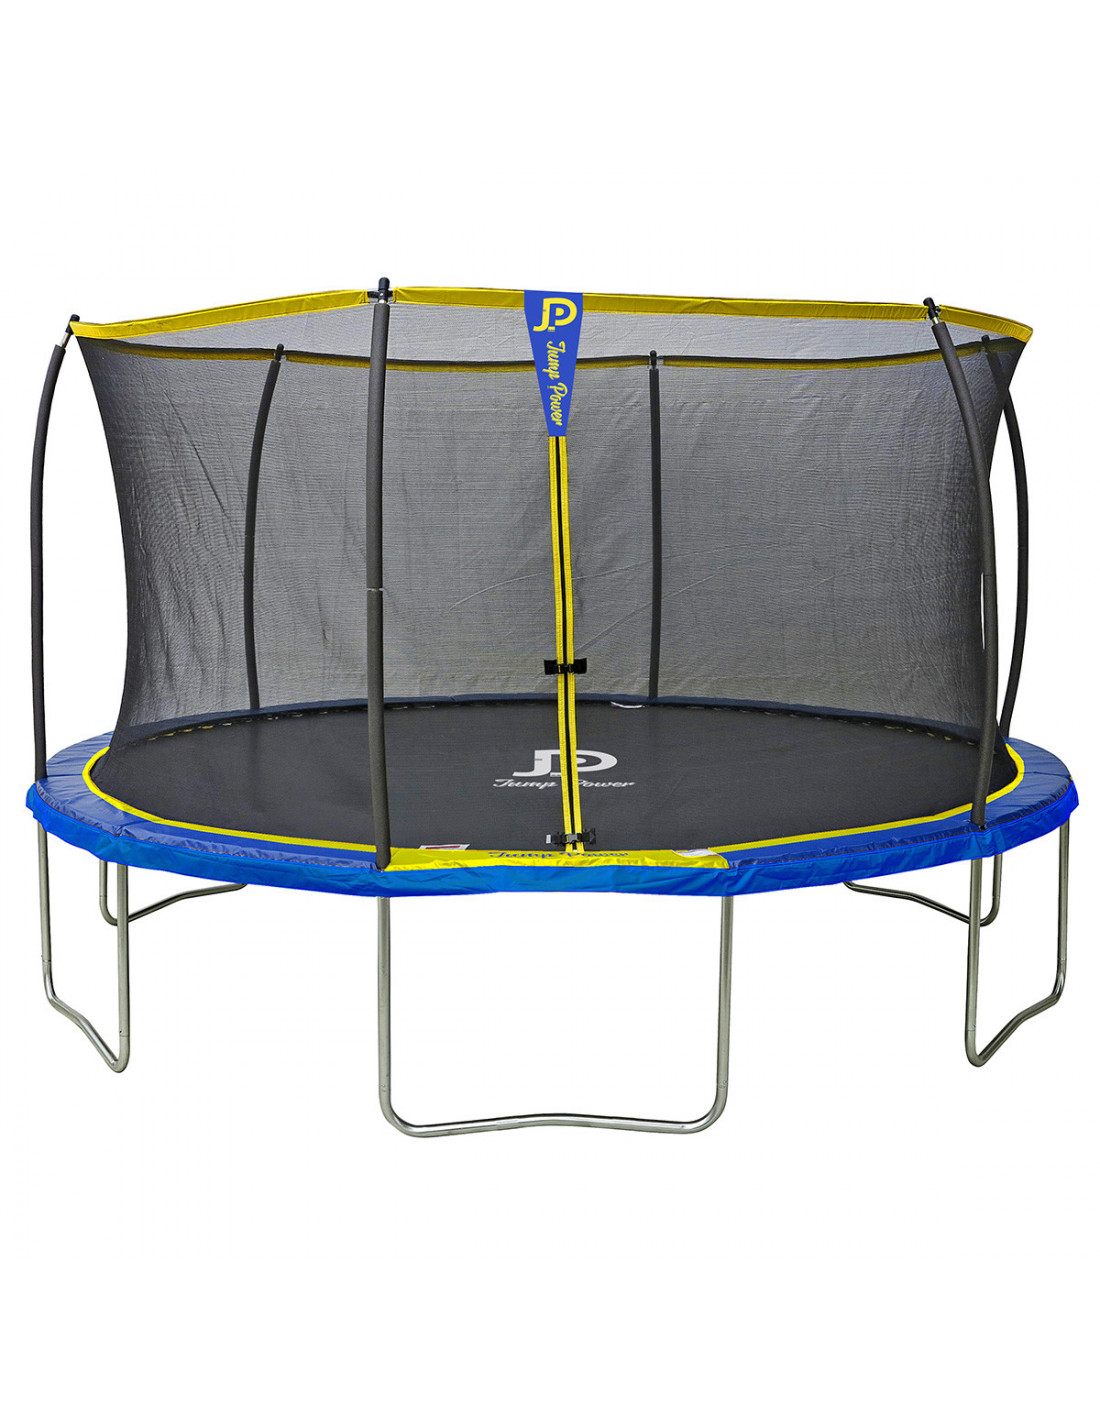 theorie voor Baby Trampoline Jump Power 430 cm - N°1 van de trampoline in Frankrijk -  superieur aan Decathlon